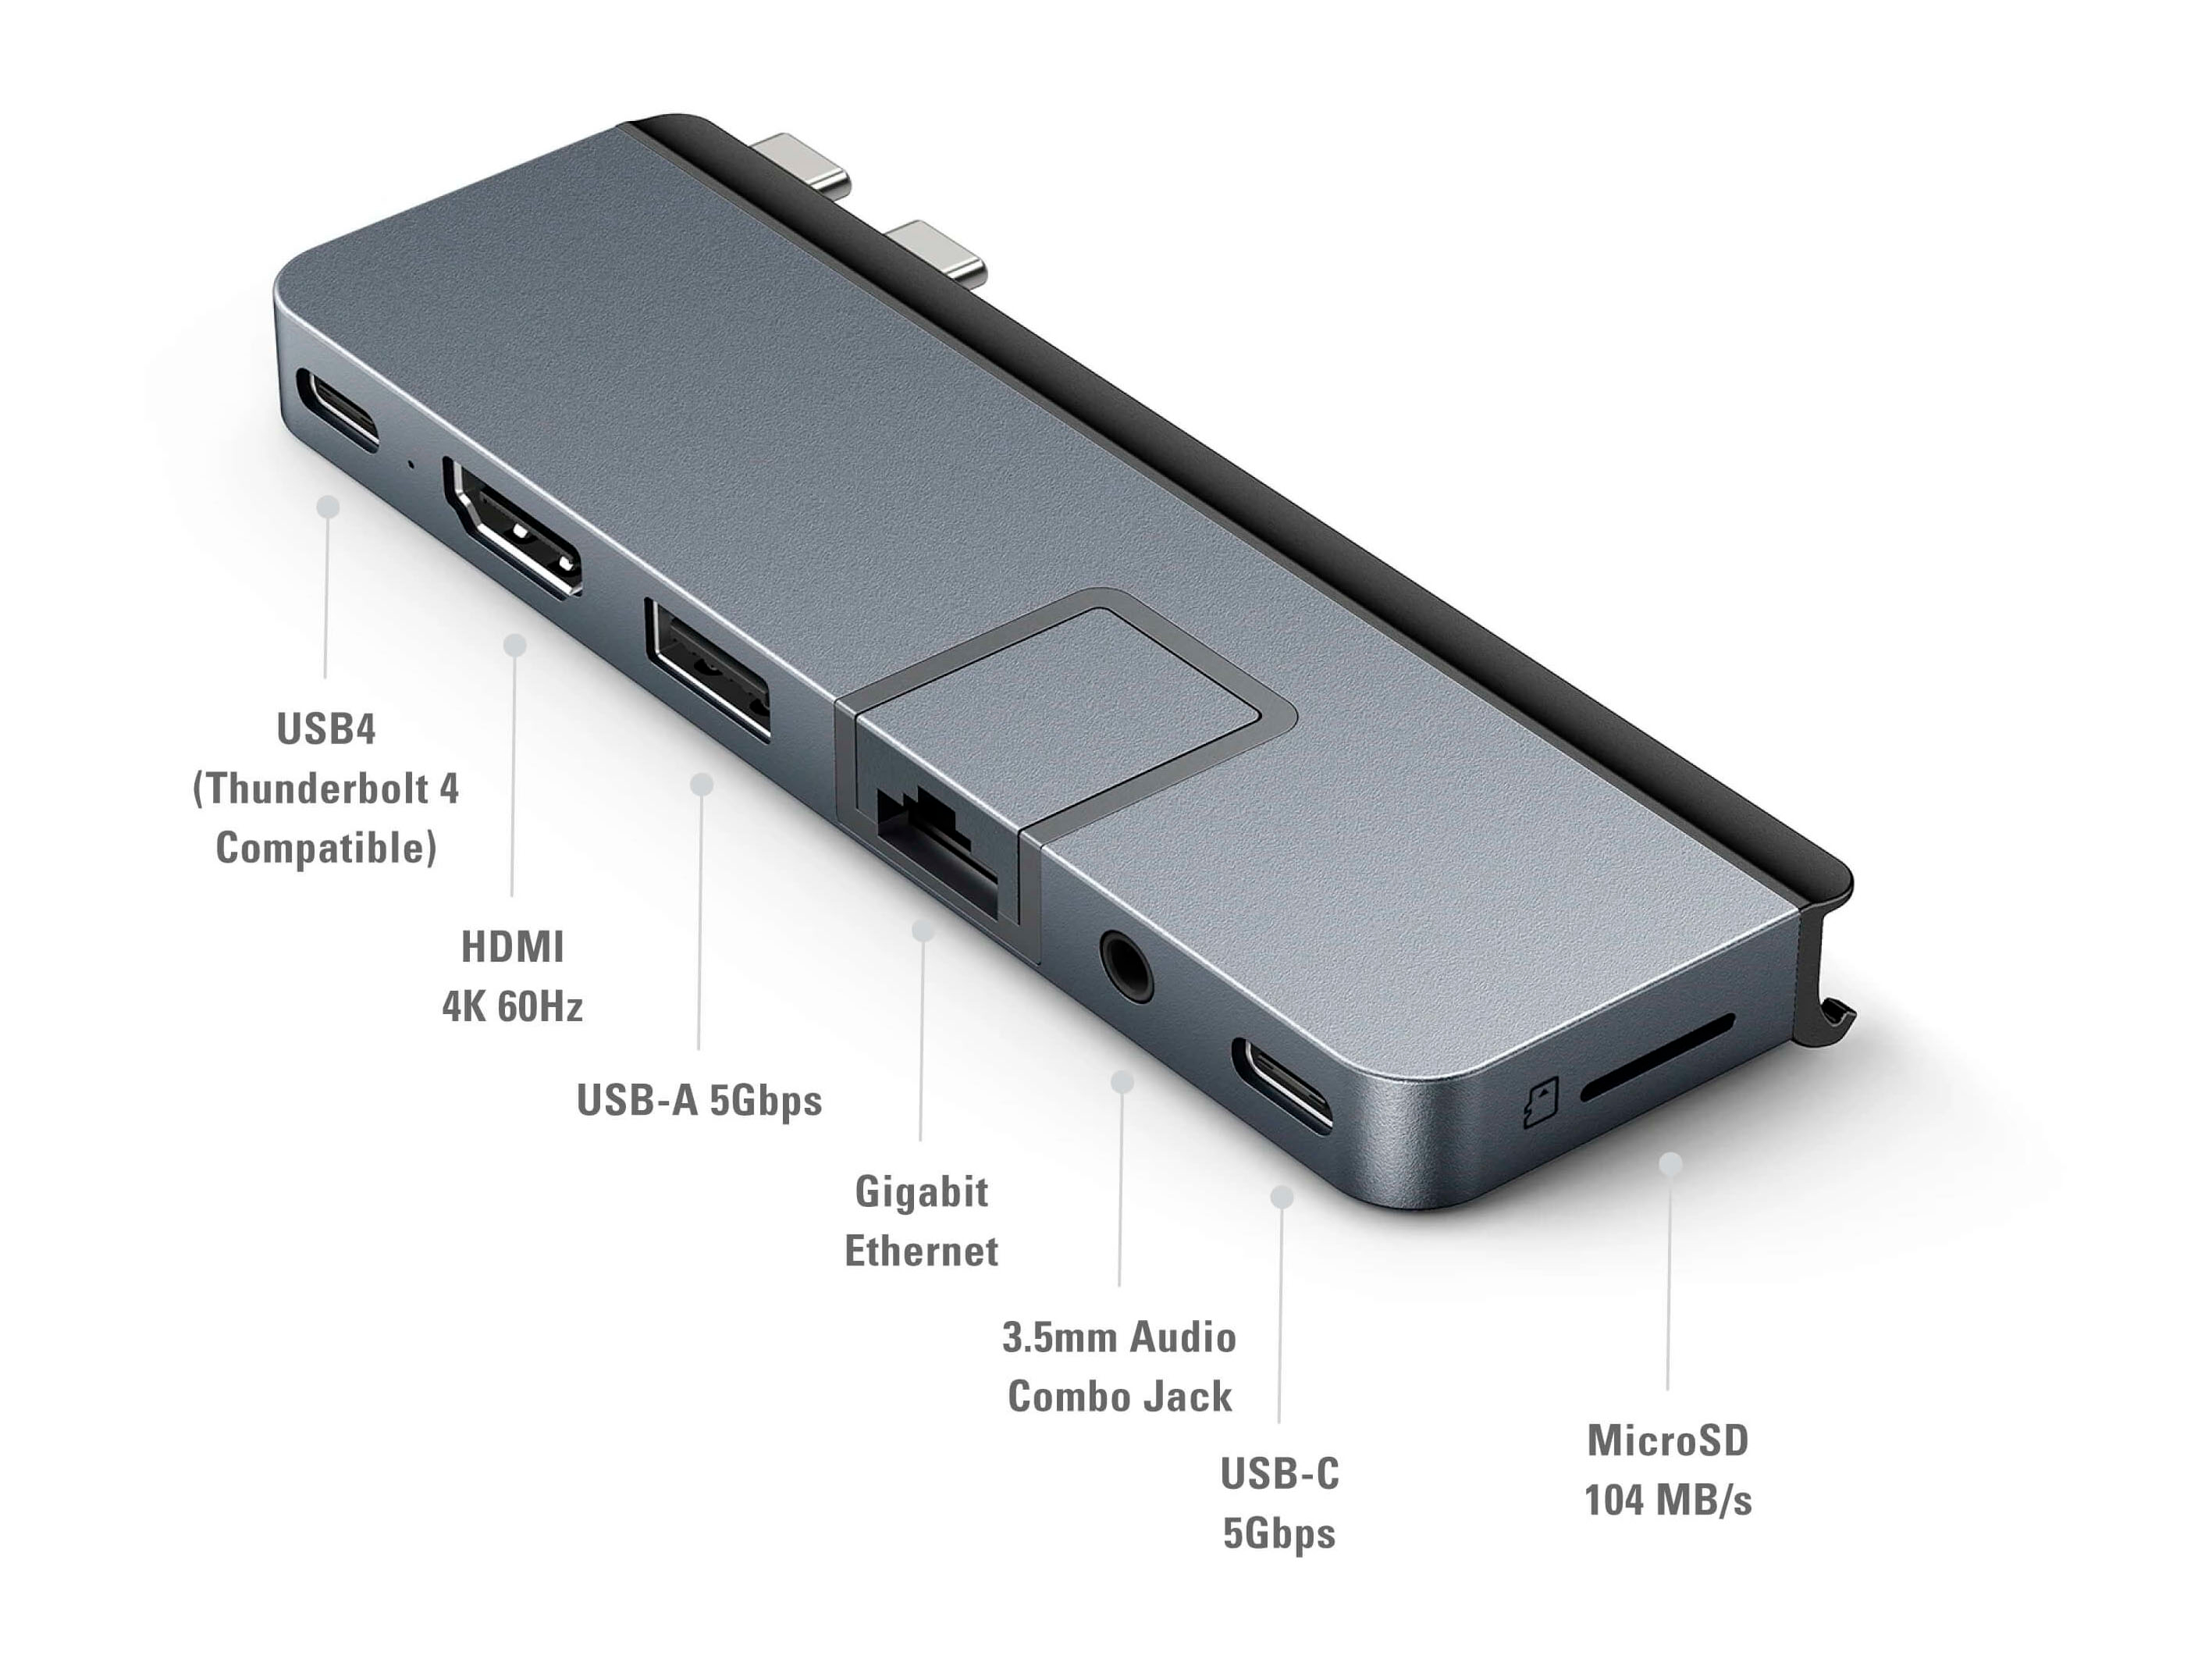 Hyper HyperDrive DUO PRO 7-in-2 USB-C Hub Space Gray HD575-GRAY - Best Buy